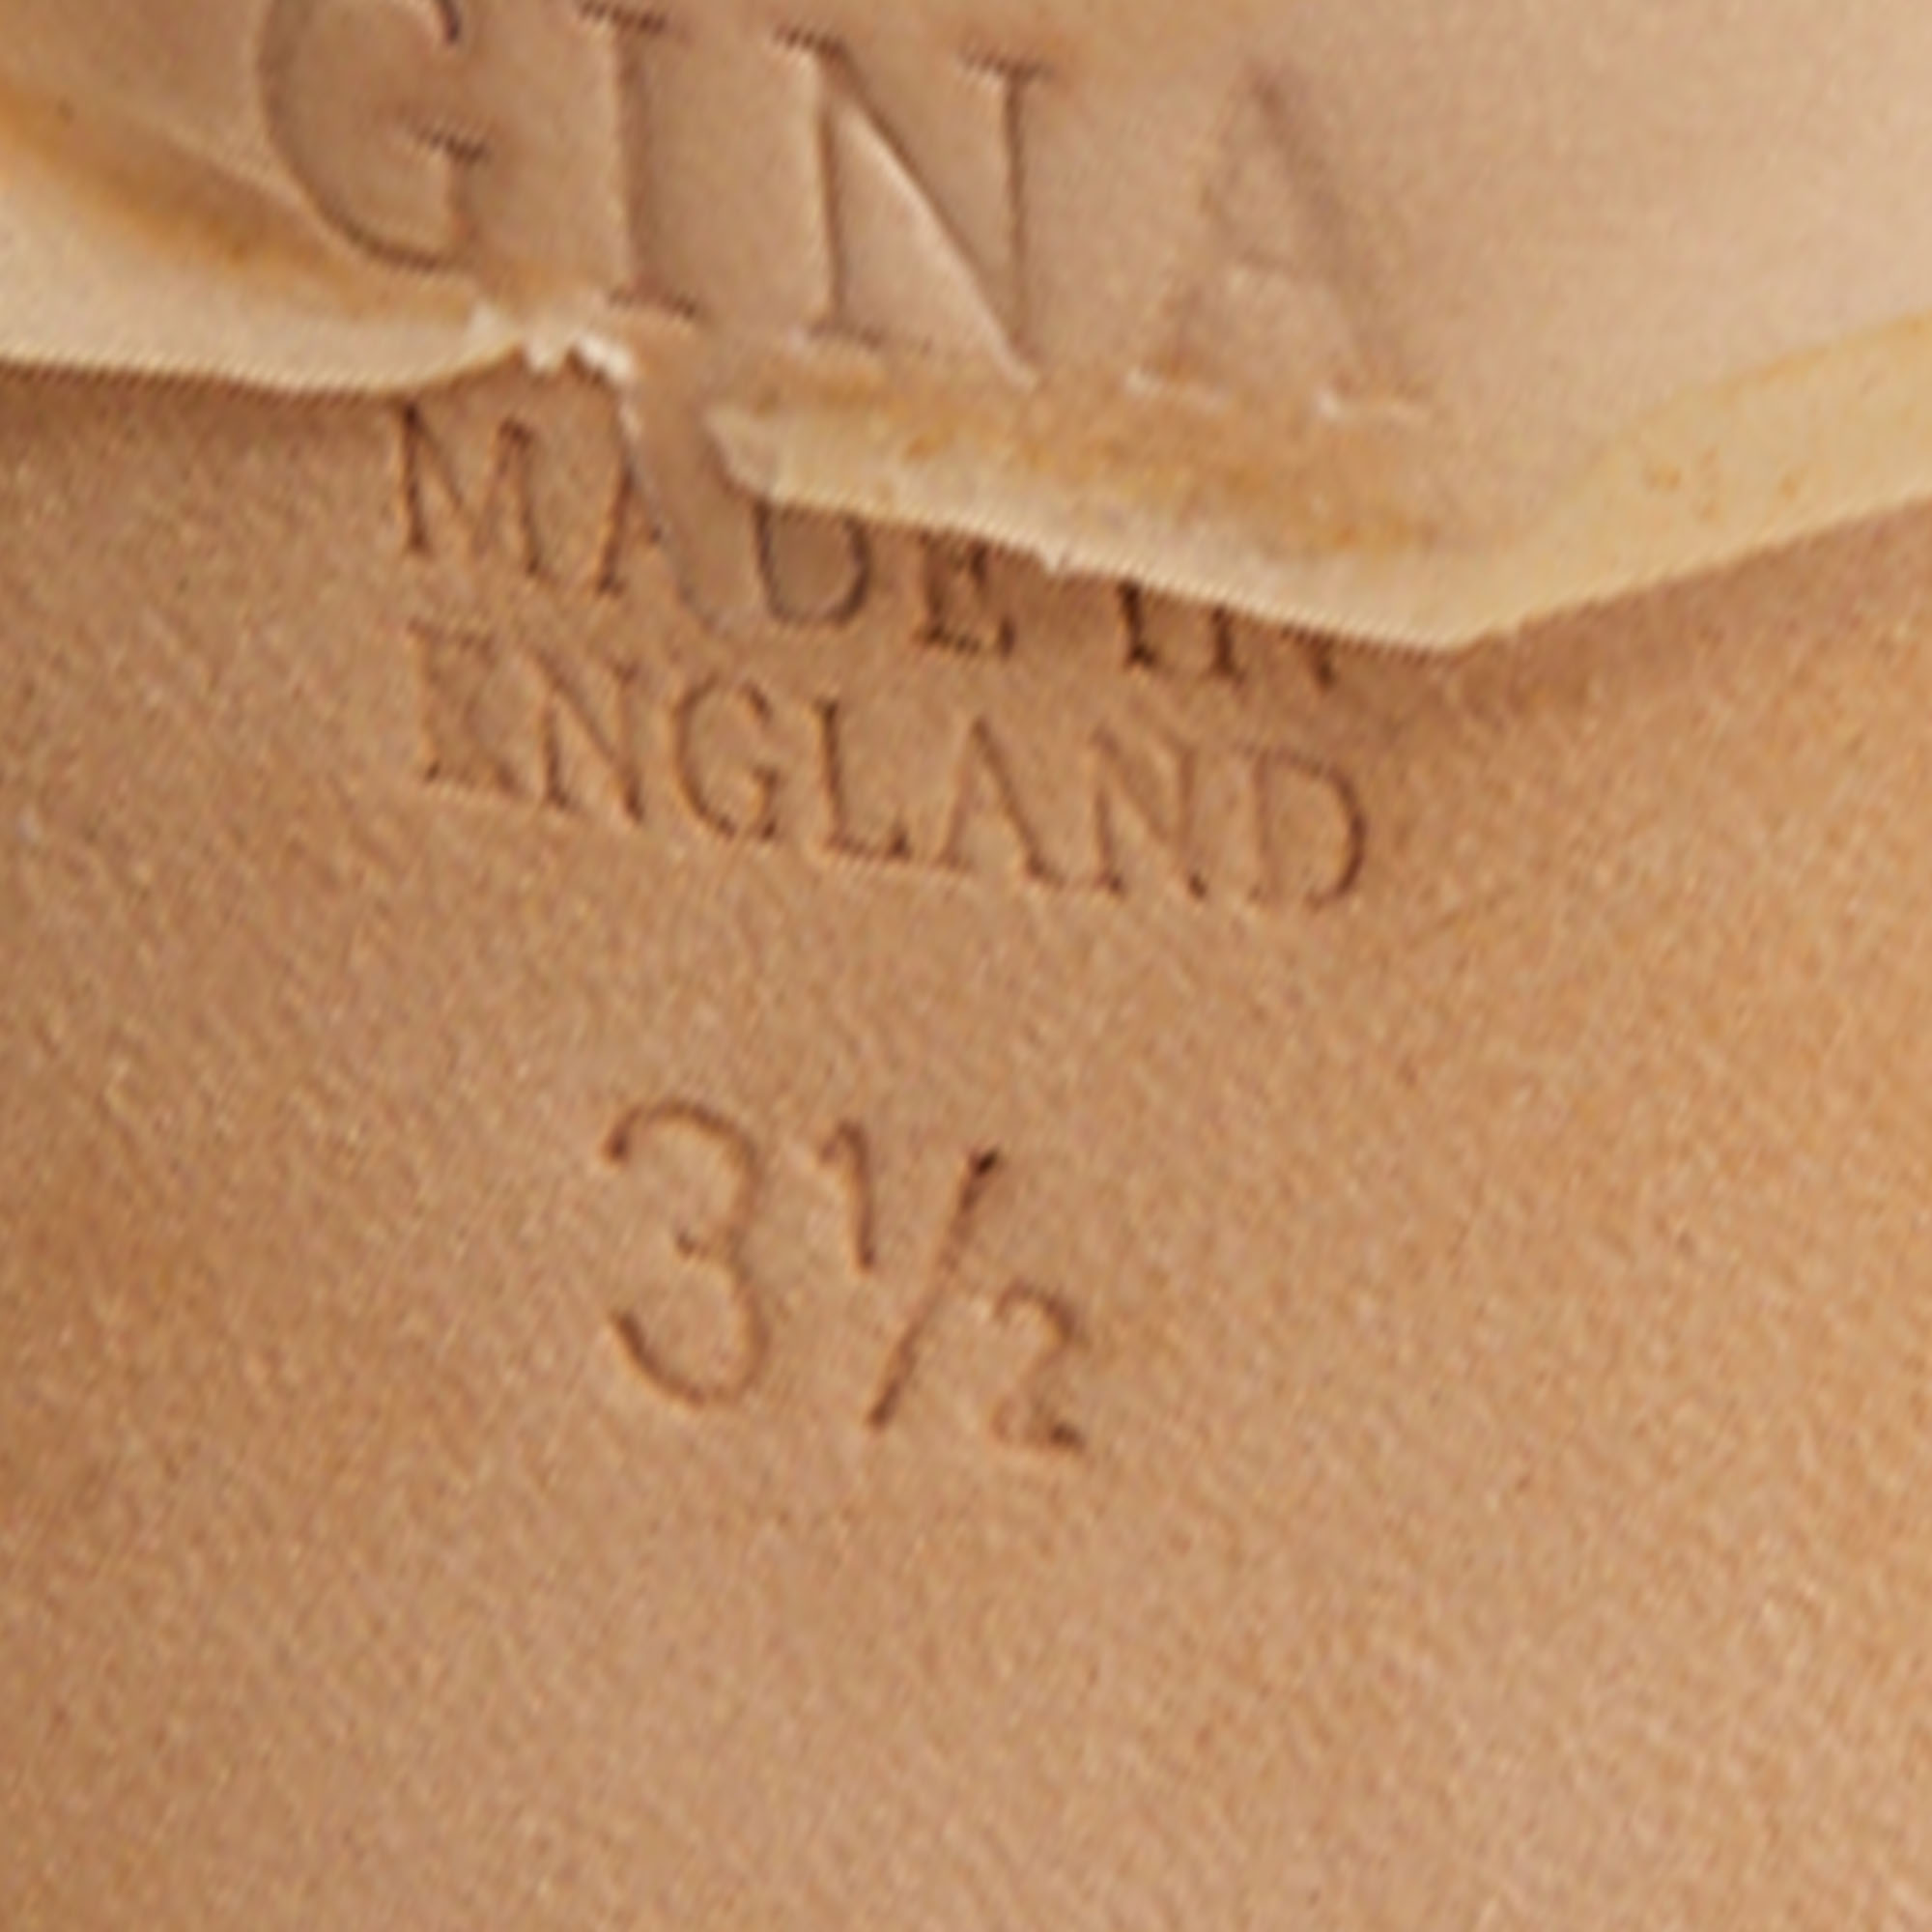 Gina Cream Satin Crystal Embellished Heel Open Toe Platform Pumps Size 36.5